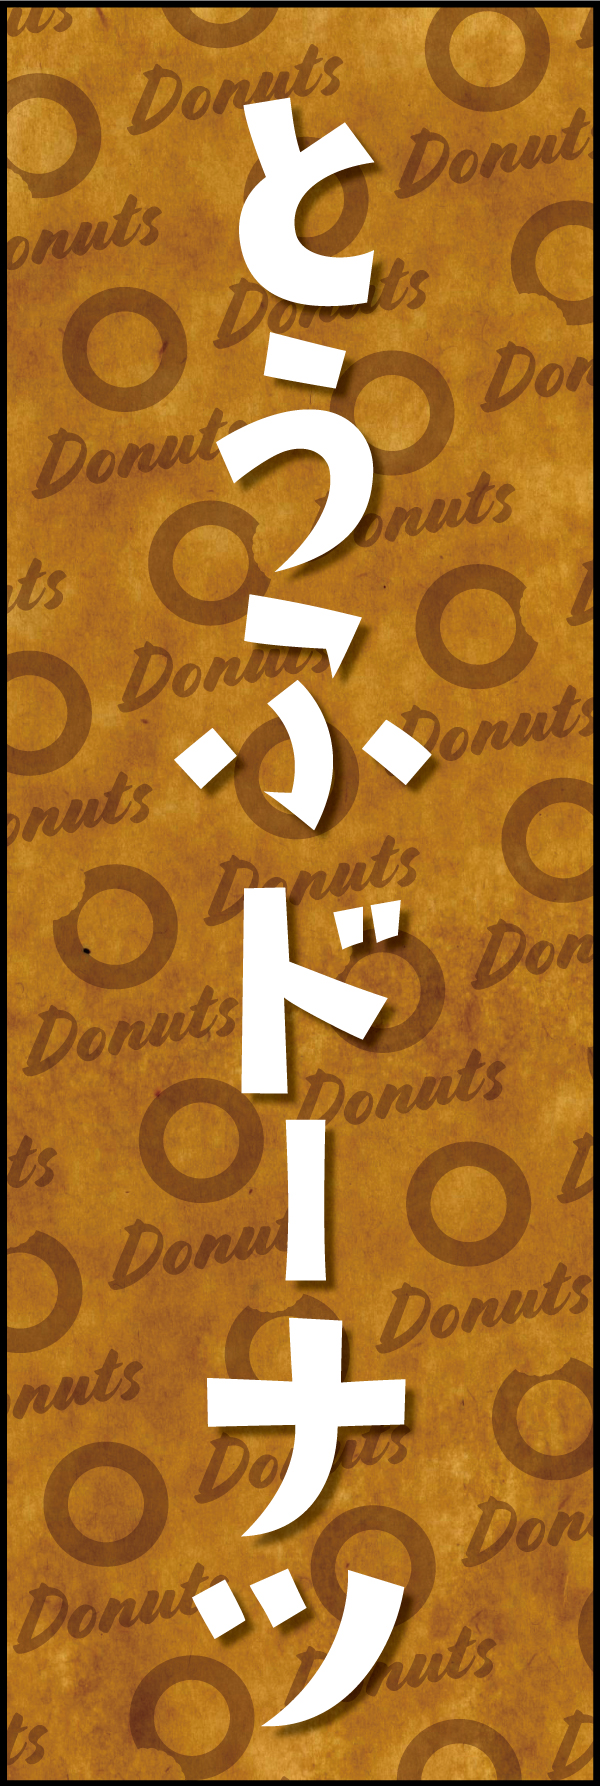 とうふドーナツ 190_01「とうふドーナツ」ののぼりです。クラフト感ある包み紙のような背景デザインと文字で、ヘルシーでオーガニックな雰囲気を演出しました。（Y.M） 